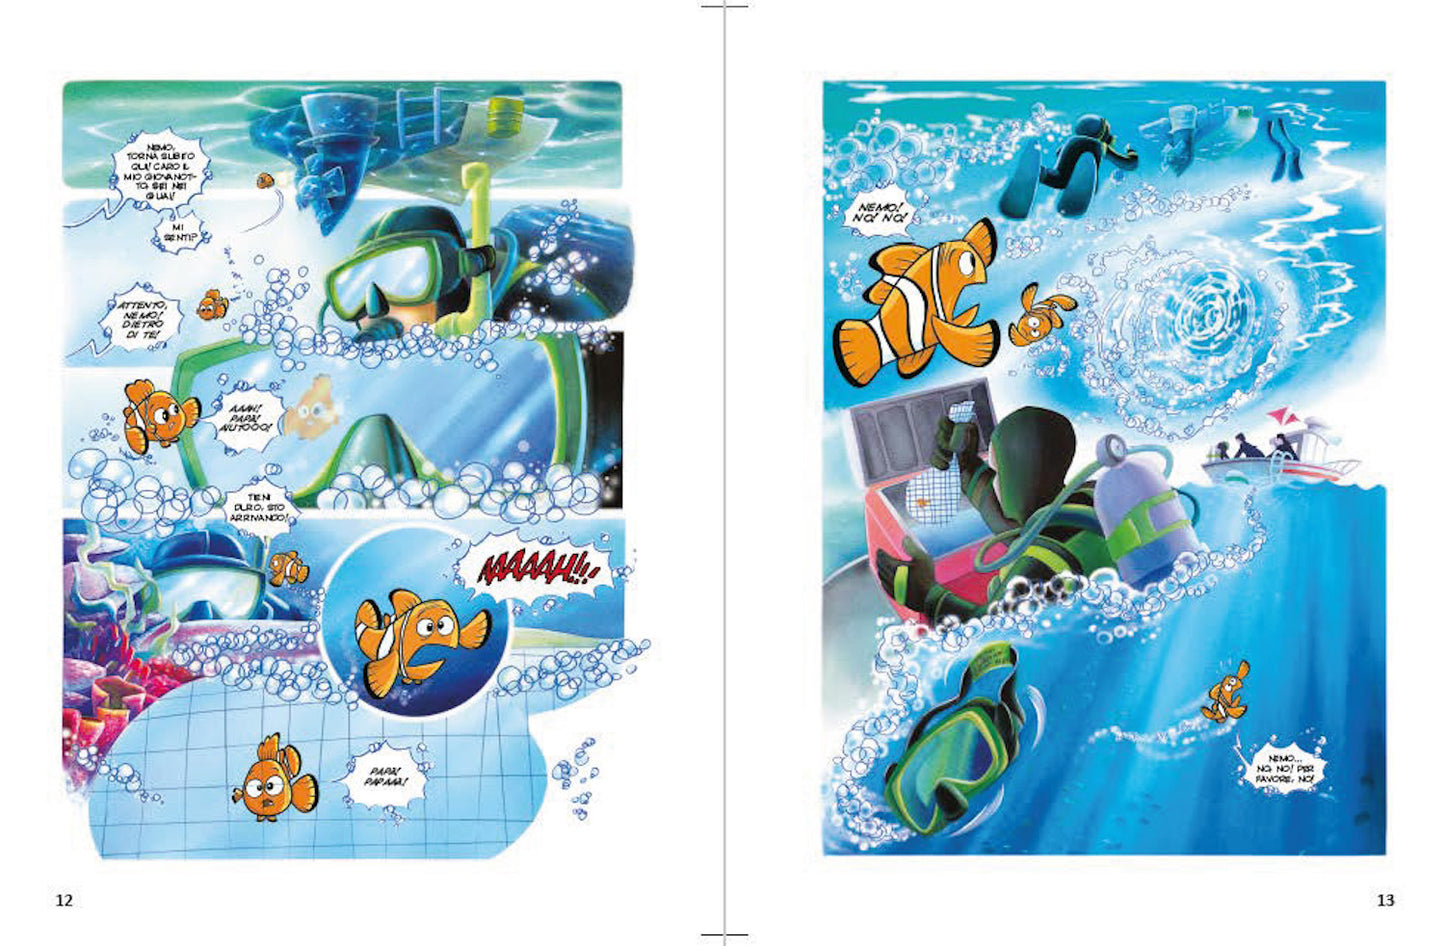 Alla ricerca di Nemo La storia a fumetti Edizione limitata::Disney 100 Anni di meravigliose emozioni